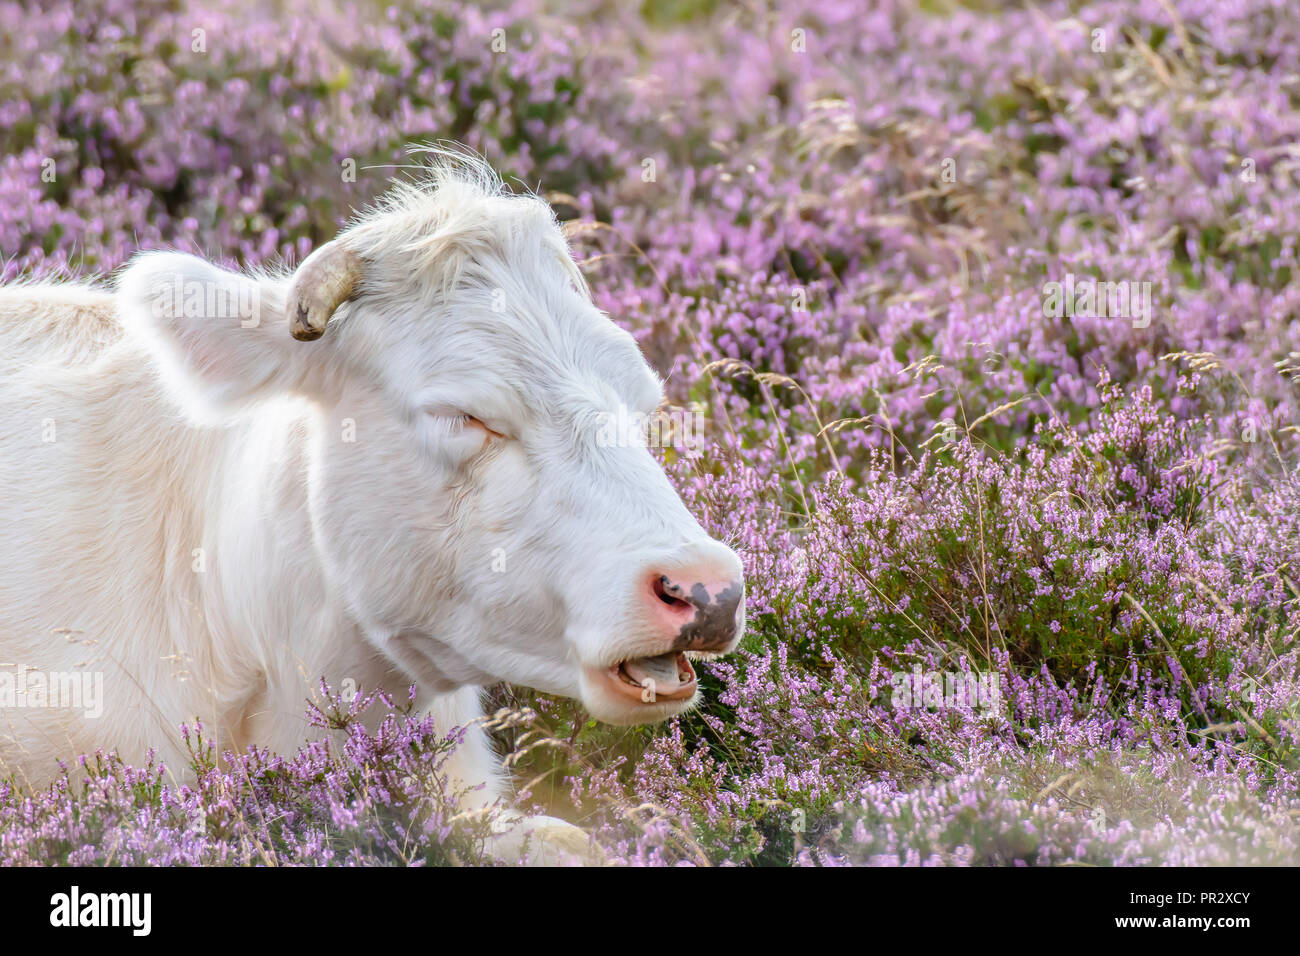 Vacca bianca dormire con muso aperto sulla brughiera coperta con vibrante viola heather flowers.Organic agricoltura nelle zone rurali del Regno Unito.I sogni dolci.spazio copia.pascolo. Foto Stock